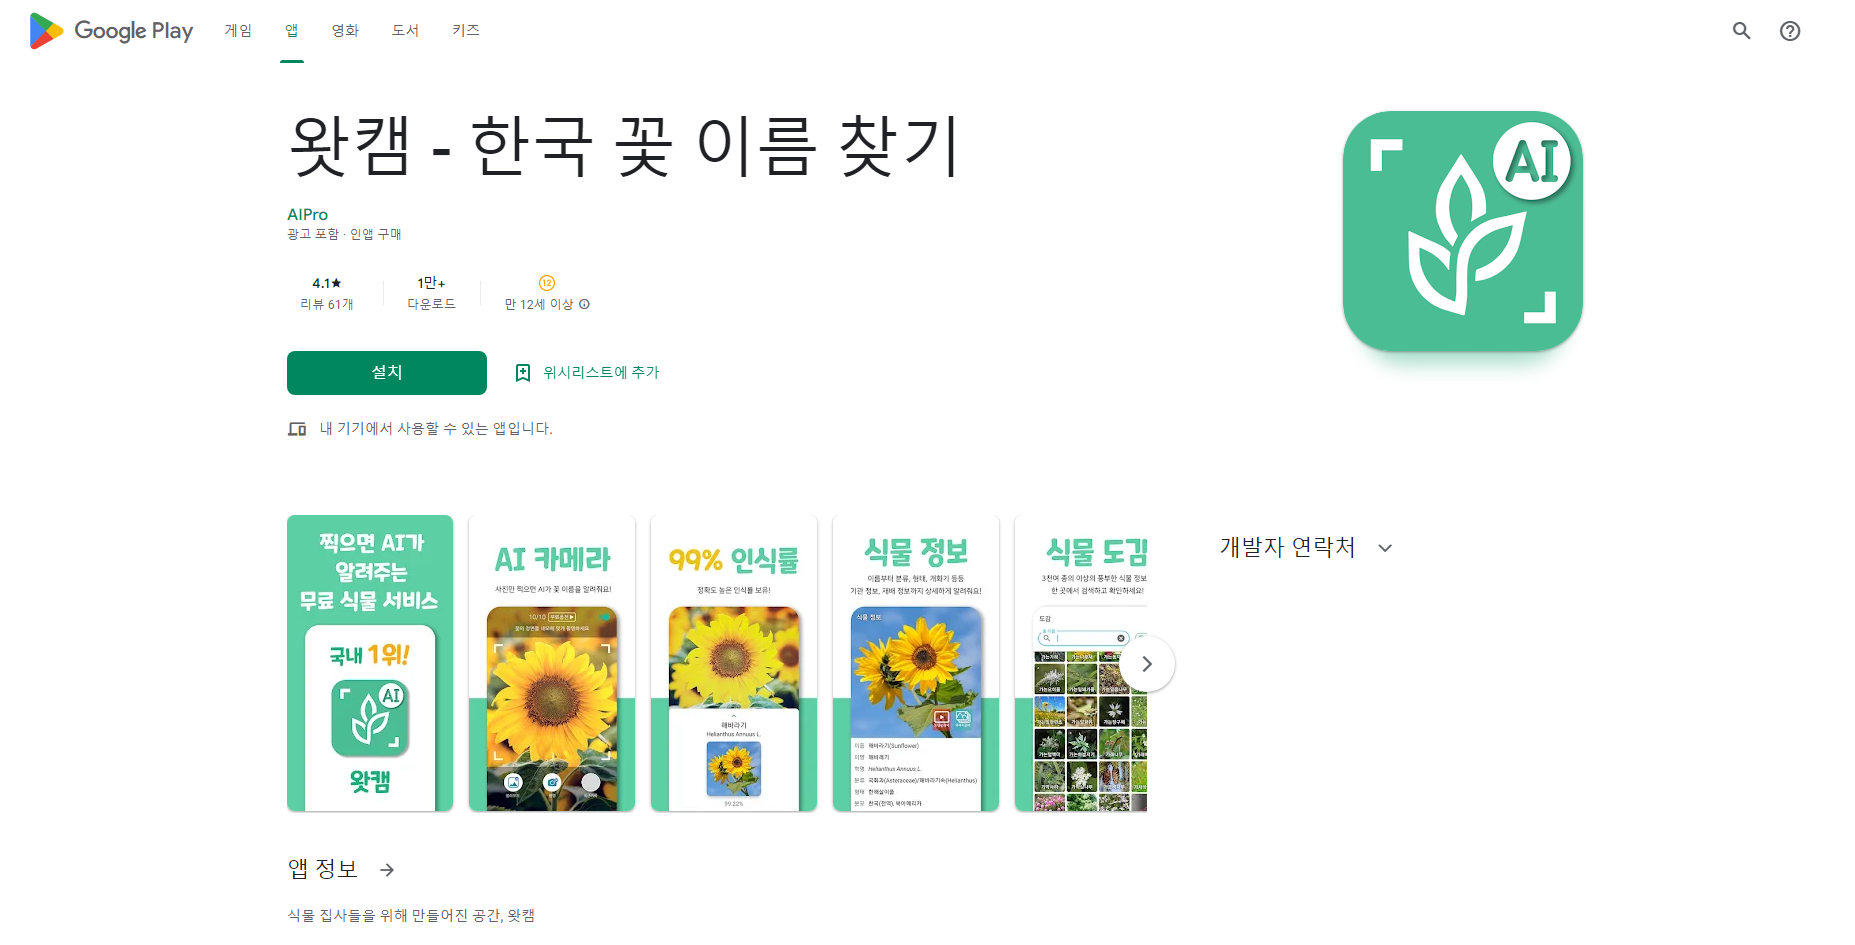 왓캠&#44; 한국 꽃 이름 찾기